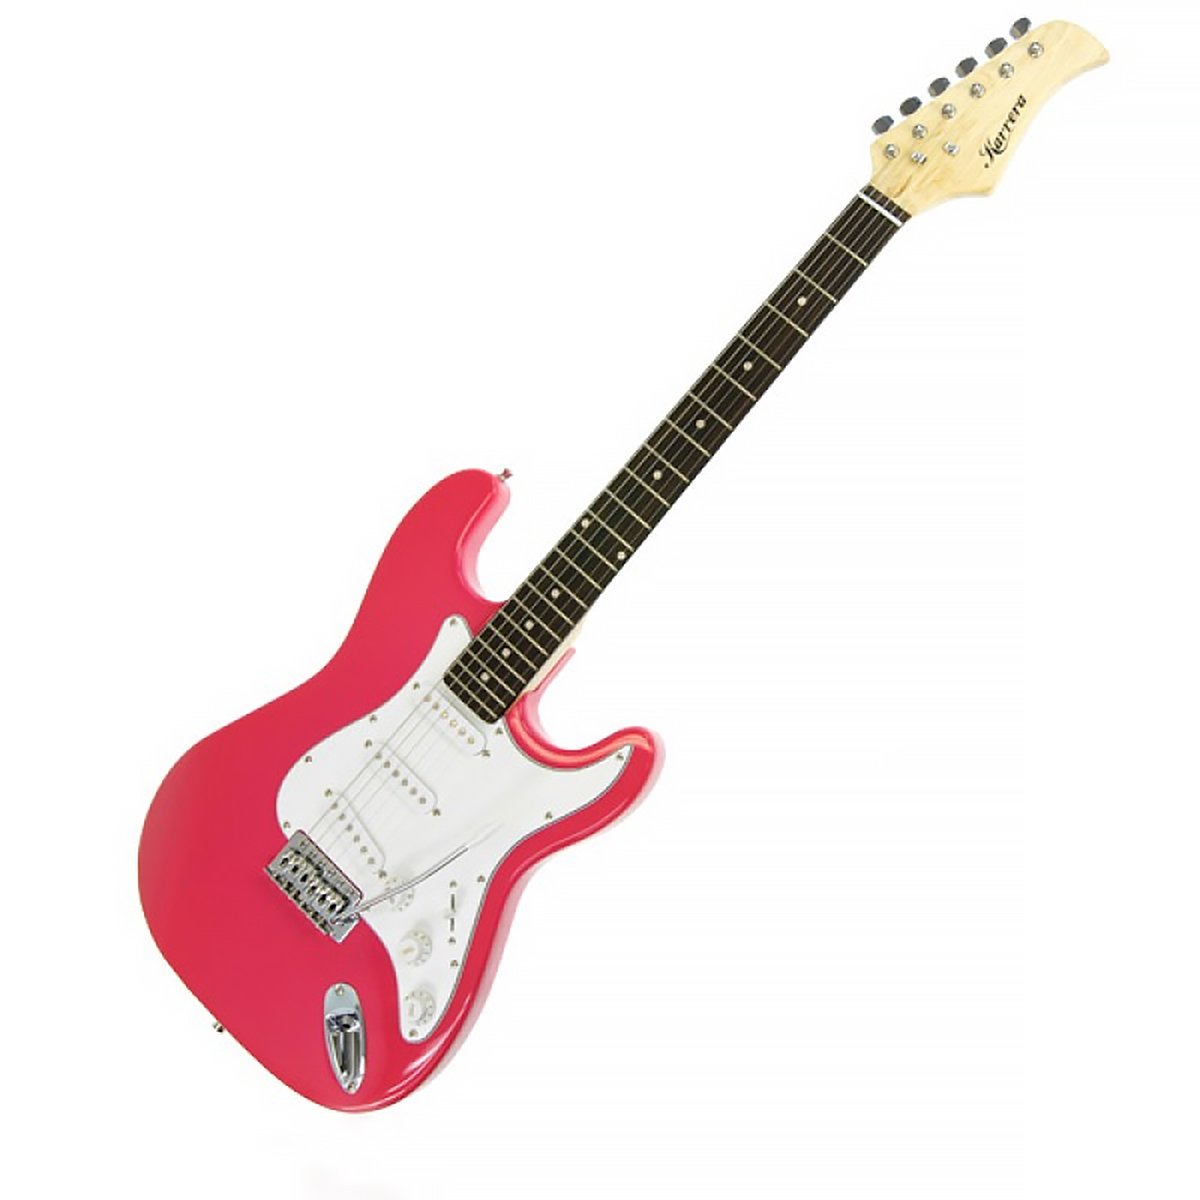 Karrera 39in Electric Guitar - Pink 2